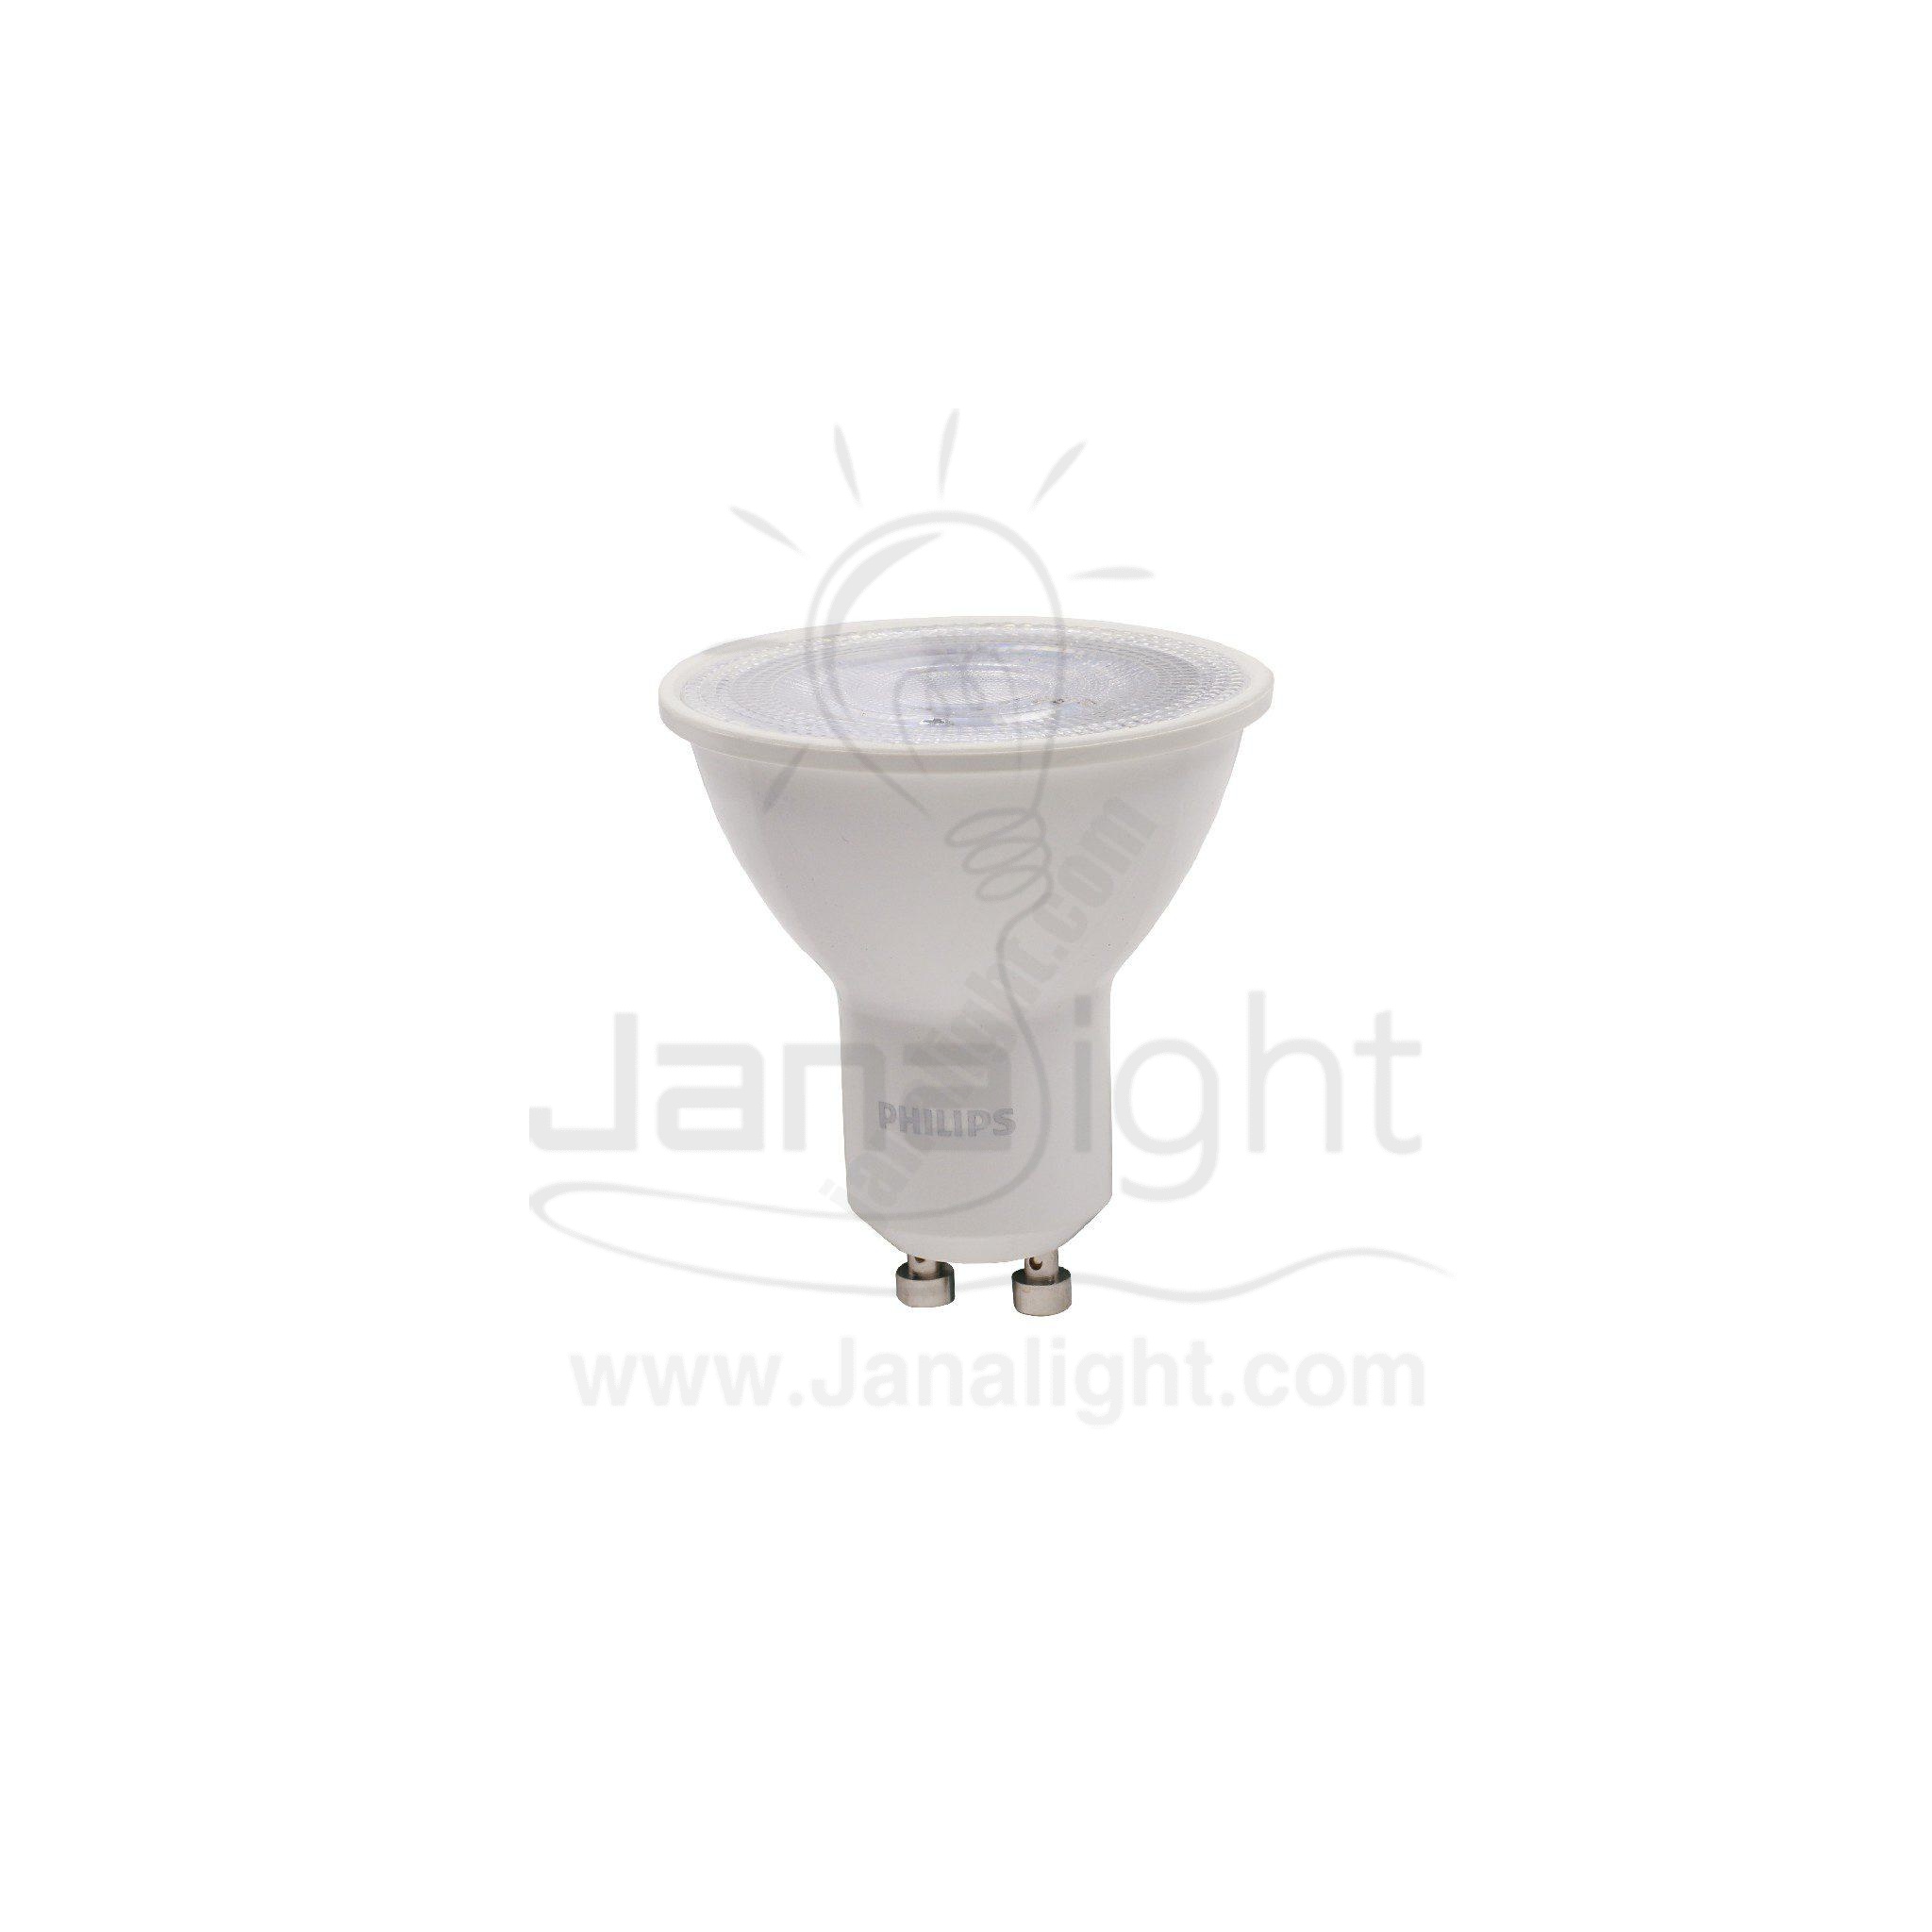 لمبة سبوت لايت كاسة لد اسنشيال 3.2 وات ابيض كعب ستارتر فيليبس Essential Spotlight lamp 3.2 watt 12V white Philips